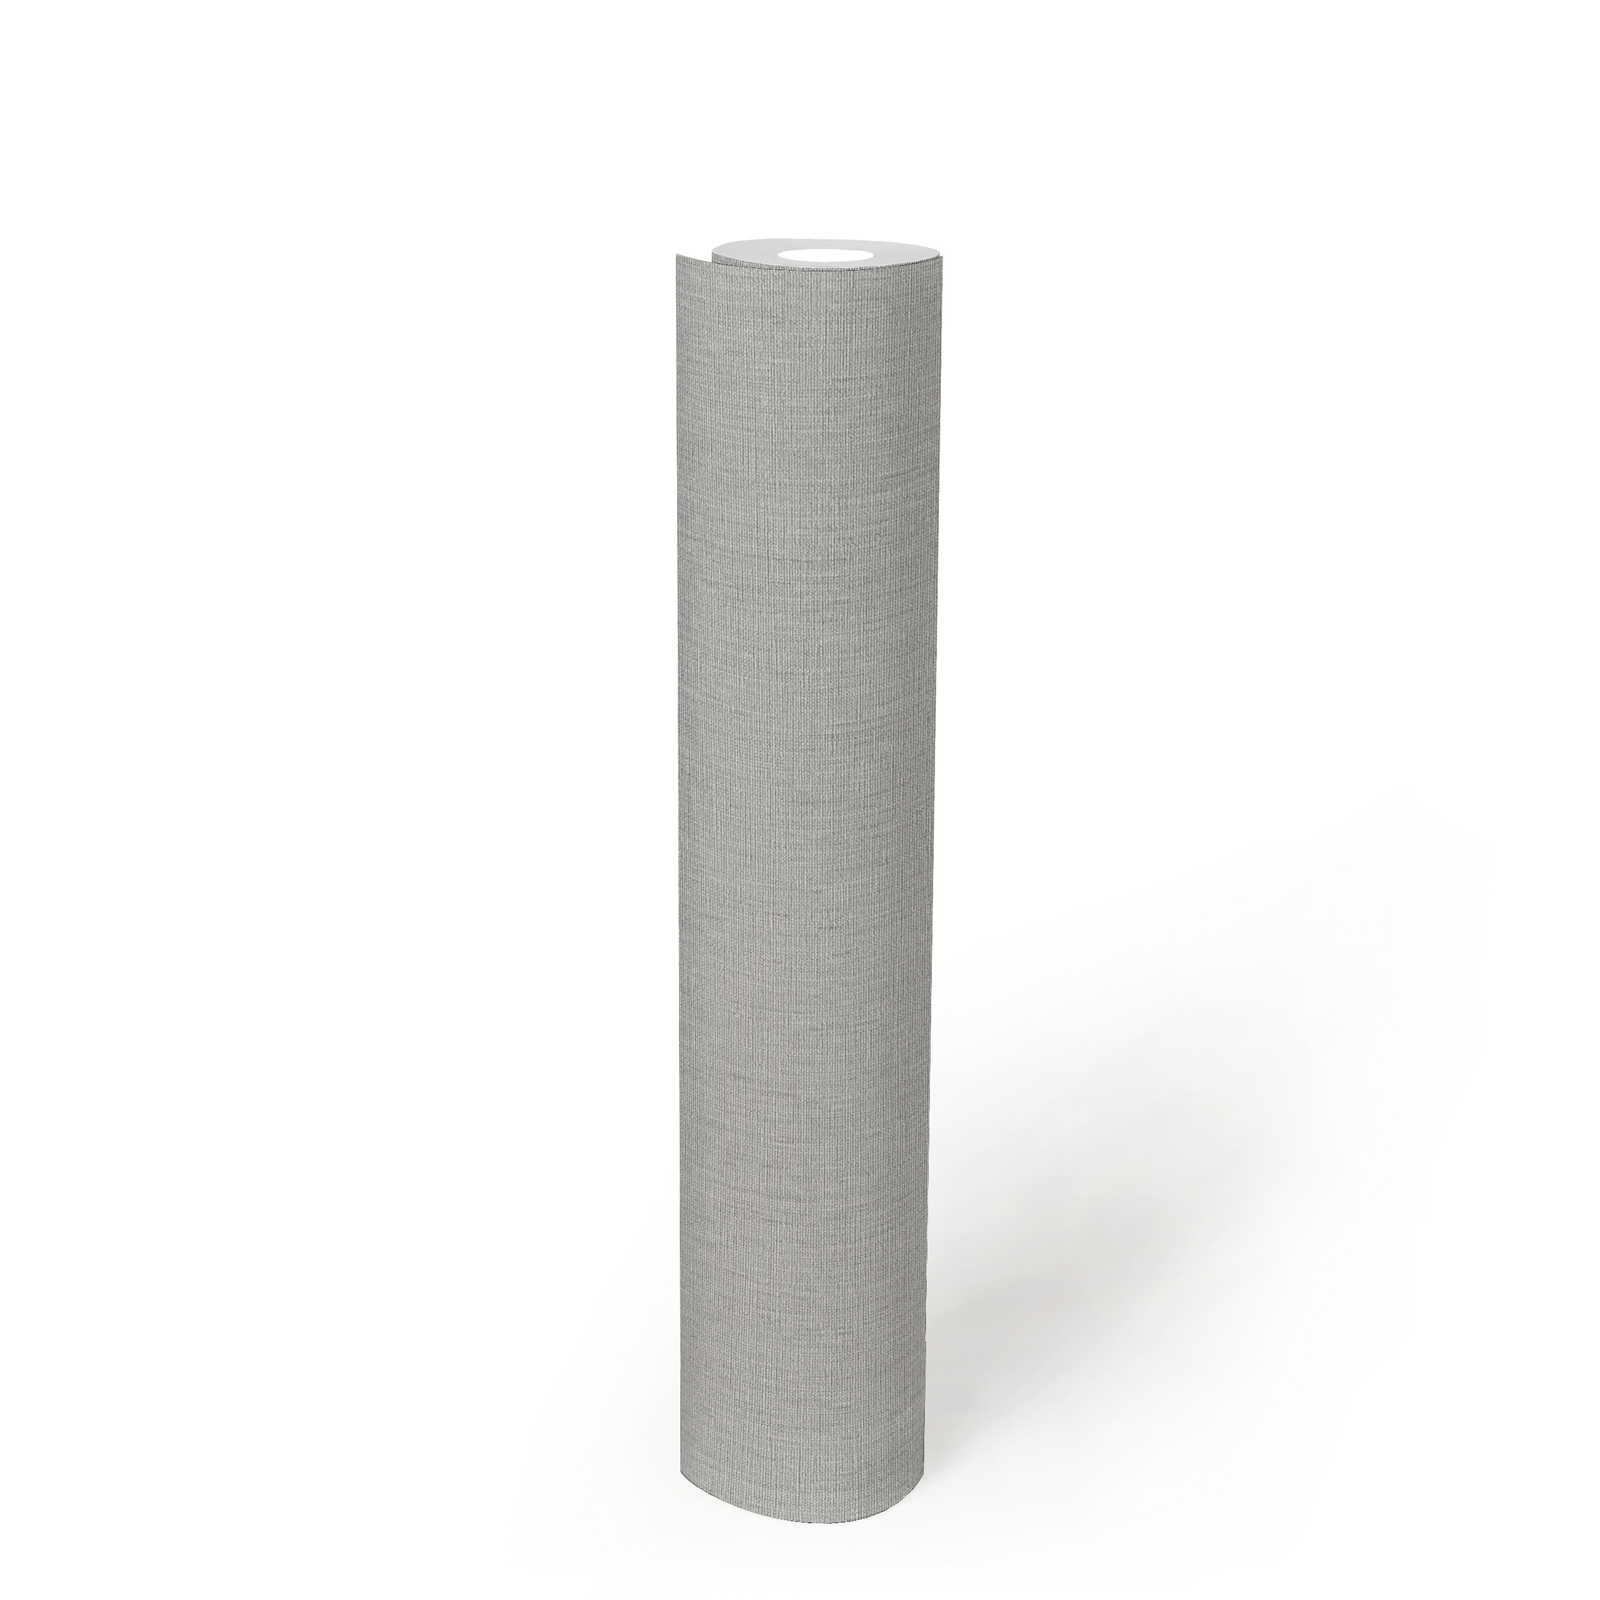             Eenheidsbehang met lichte structuur in een eenvoudige tint - grijs
        